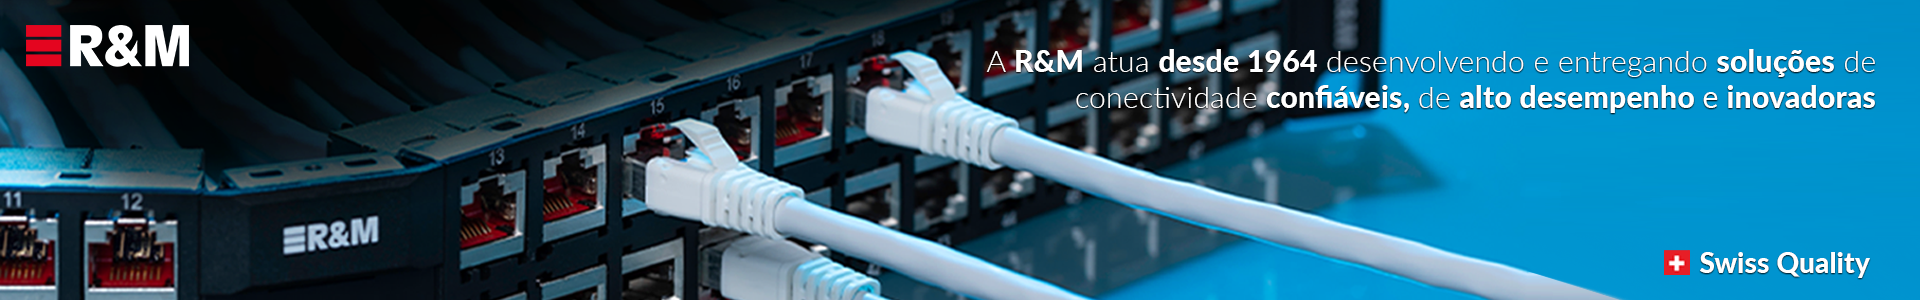 Conheça os produtos R&M disponíveis na GP Cabling